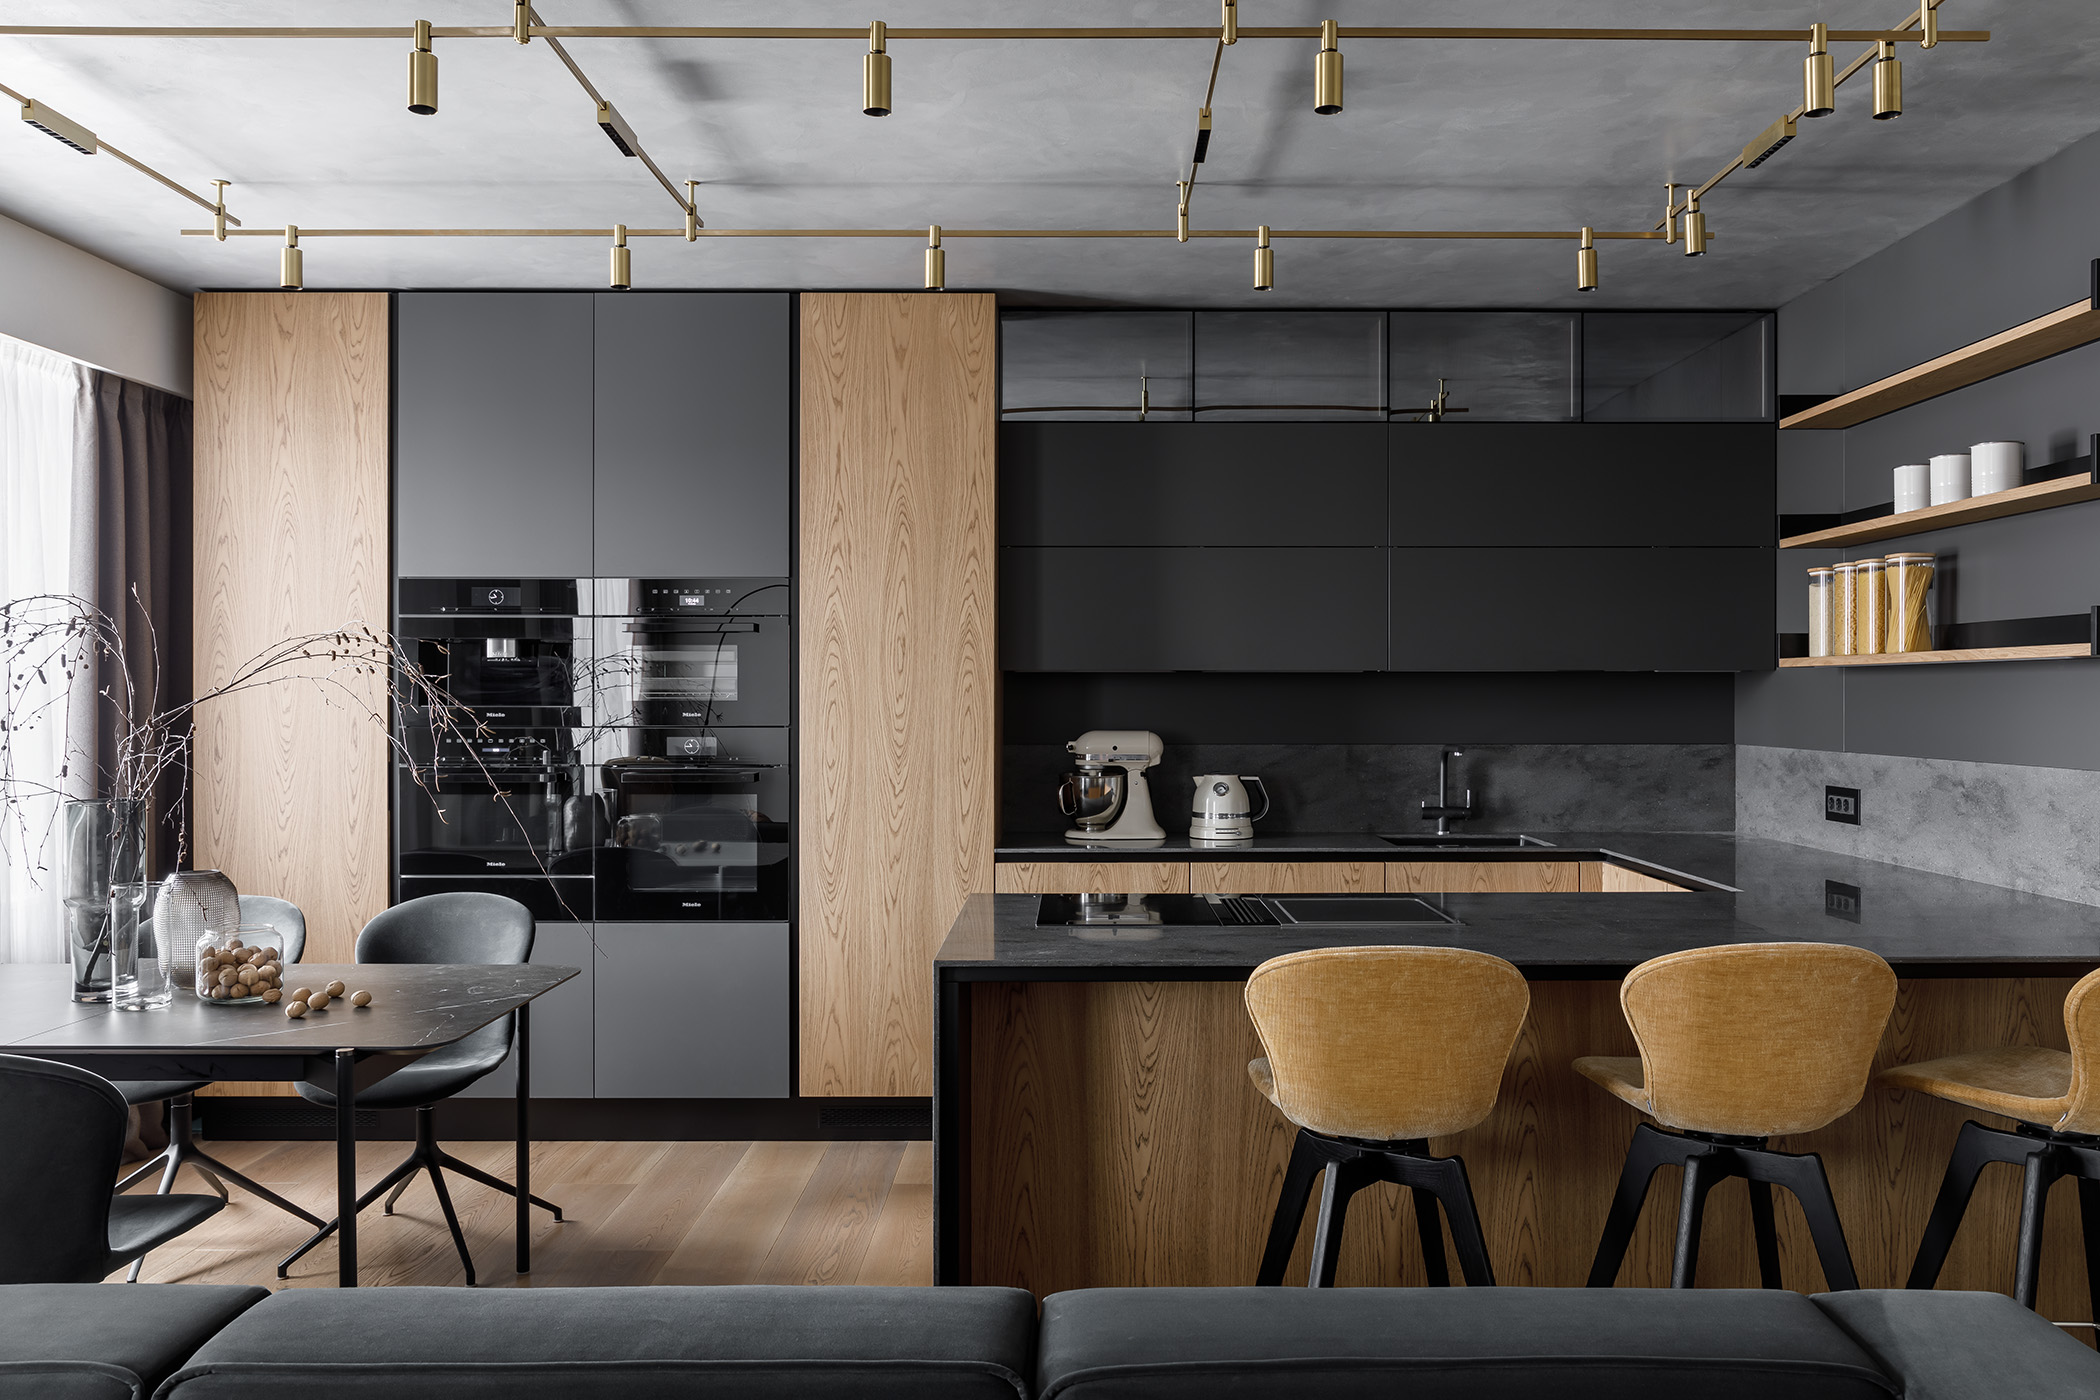 Крупные минималистичные формы кухни задают архитектуру помещения - проекты Setus Design